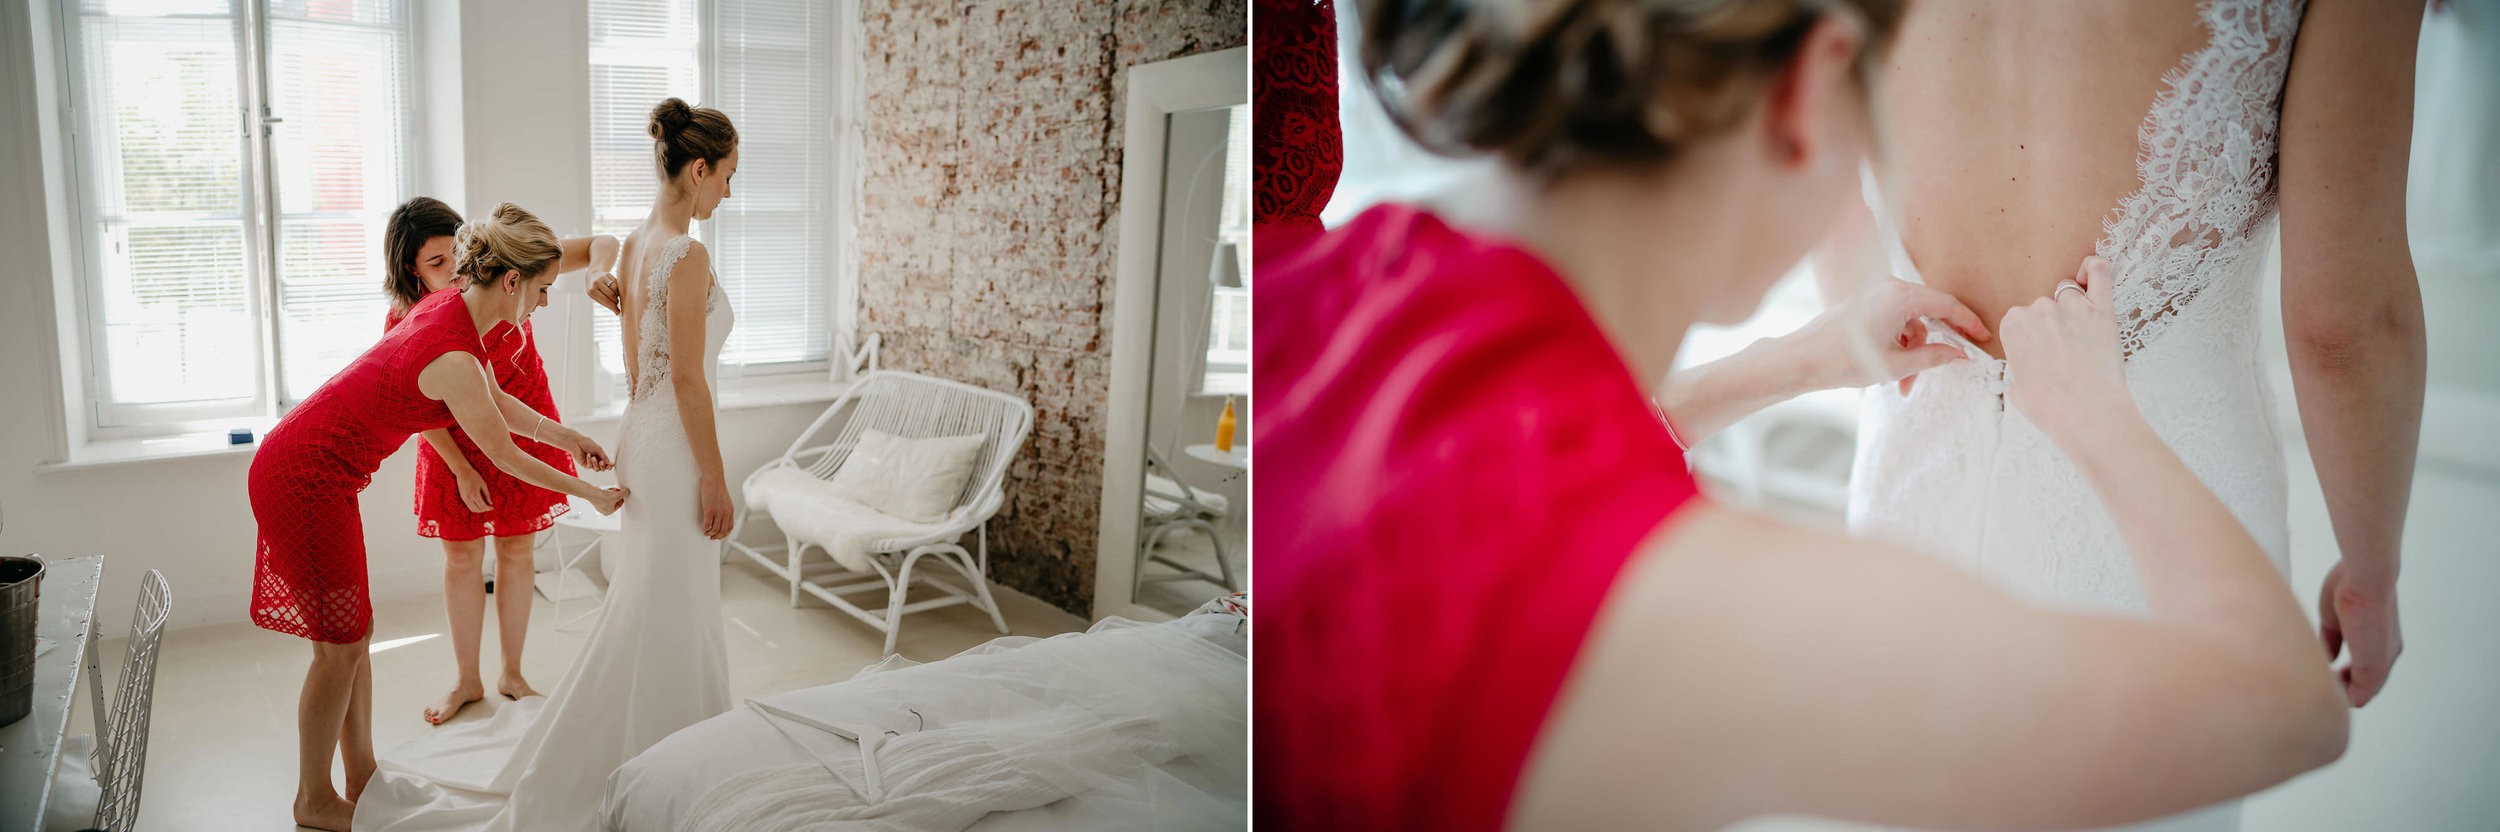 Bruid klaarmaakt trouwerij bruiloftfotograaf Mark Hadden